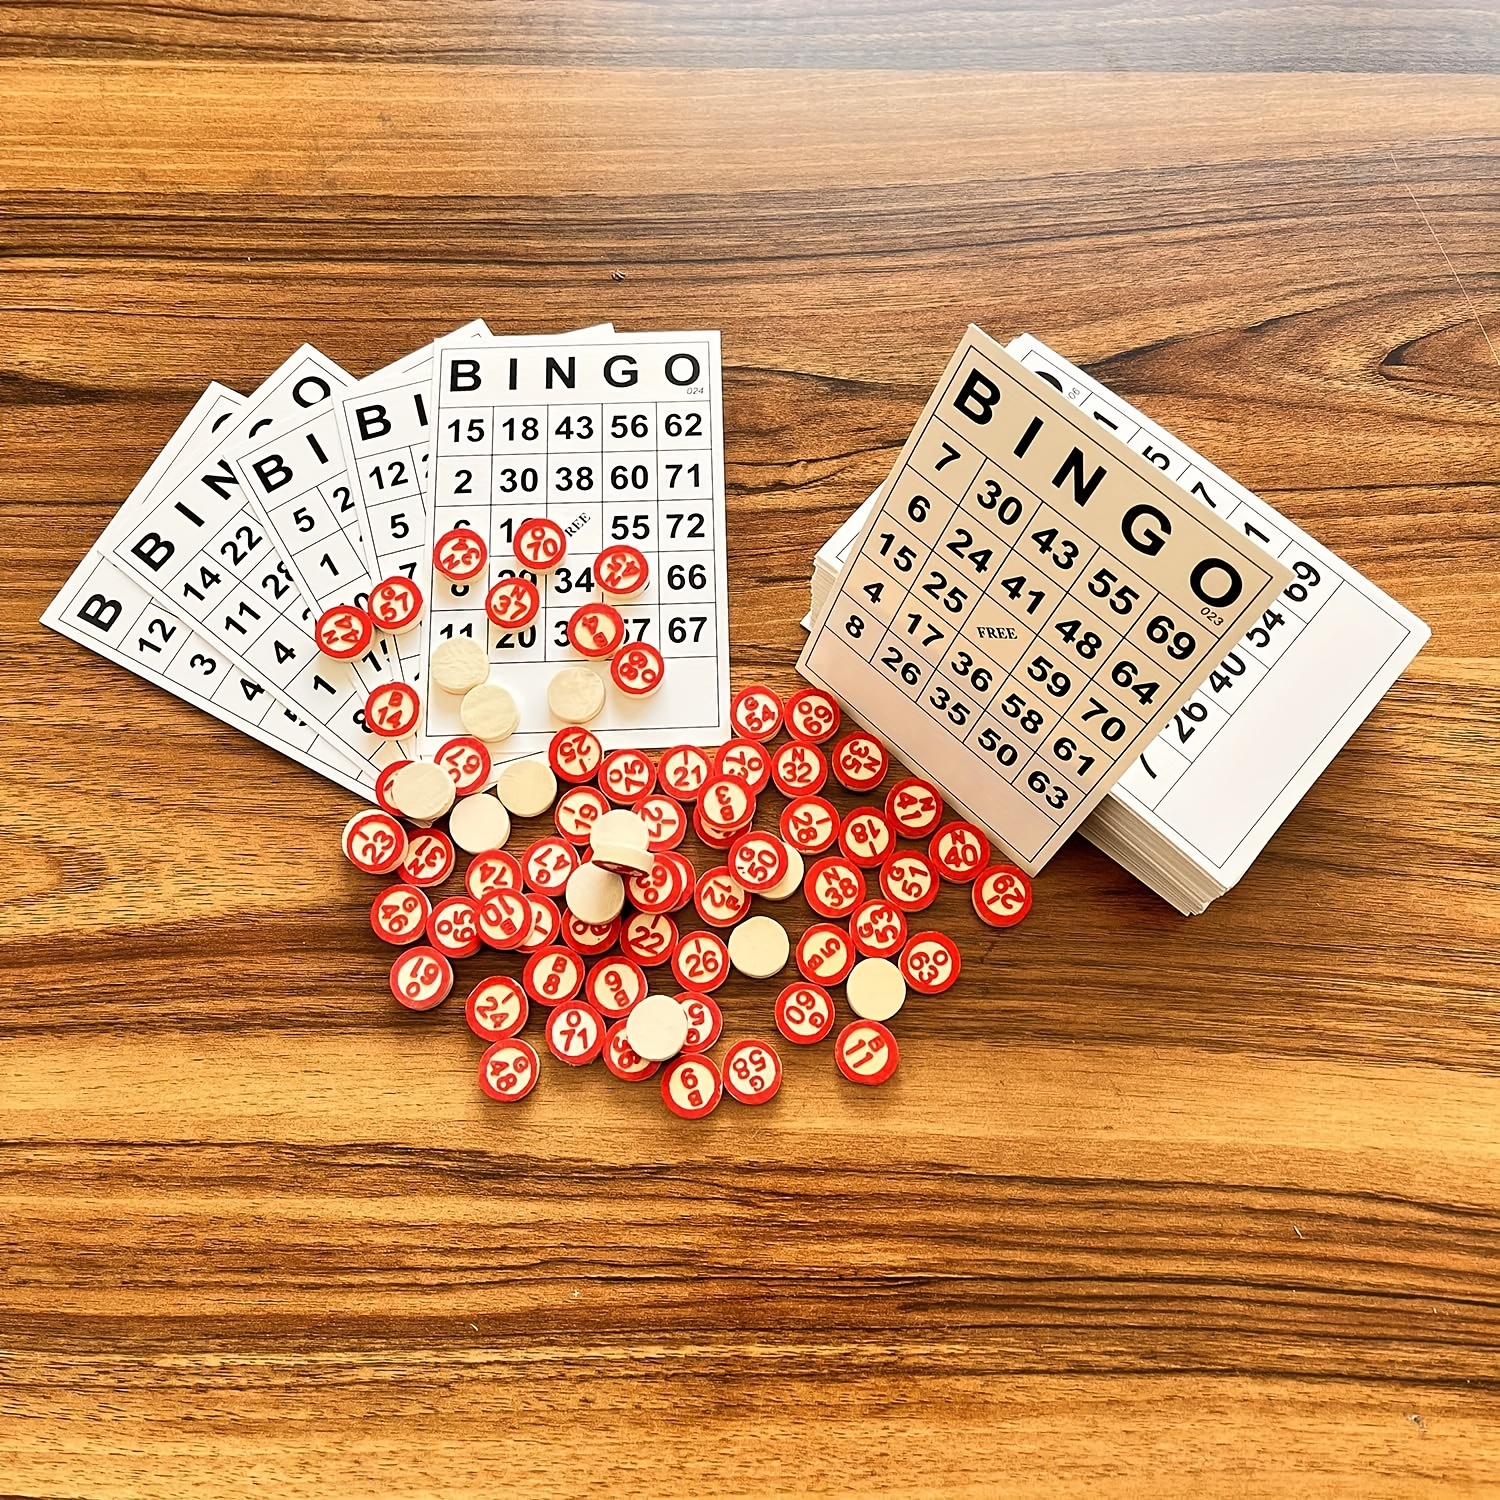 Toinsa - Juego de bingo con 12 cartones y 90 números, 2 a 6 jugadores,  juego de mesa tradicional, familiar, diversión, fichas no